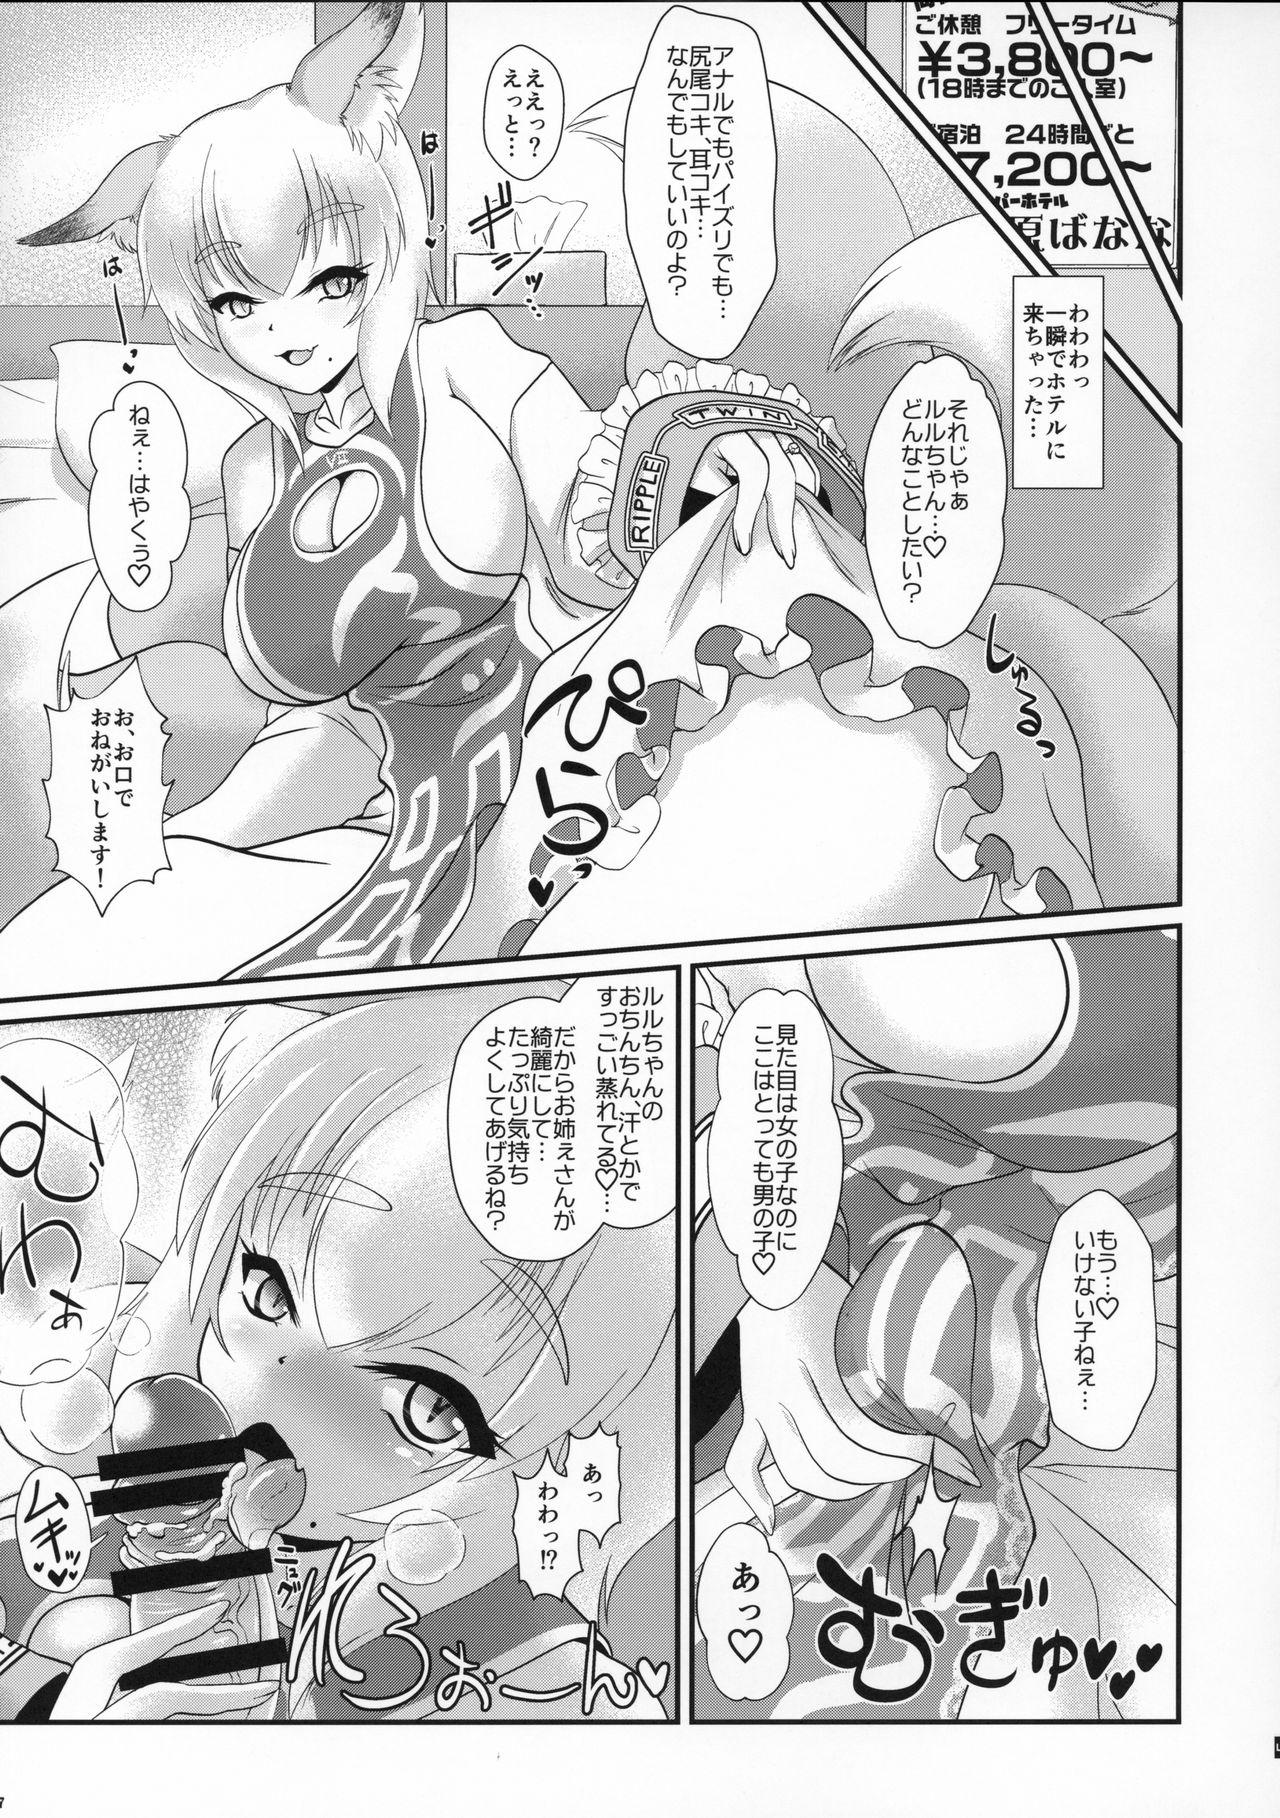 Livecam Natsu no Touhou Manga Matsuri Great Yakumo Ran VS Ran-sama CJD - Touhou project Anal Licking - Page 6